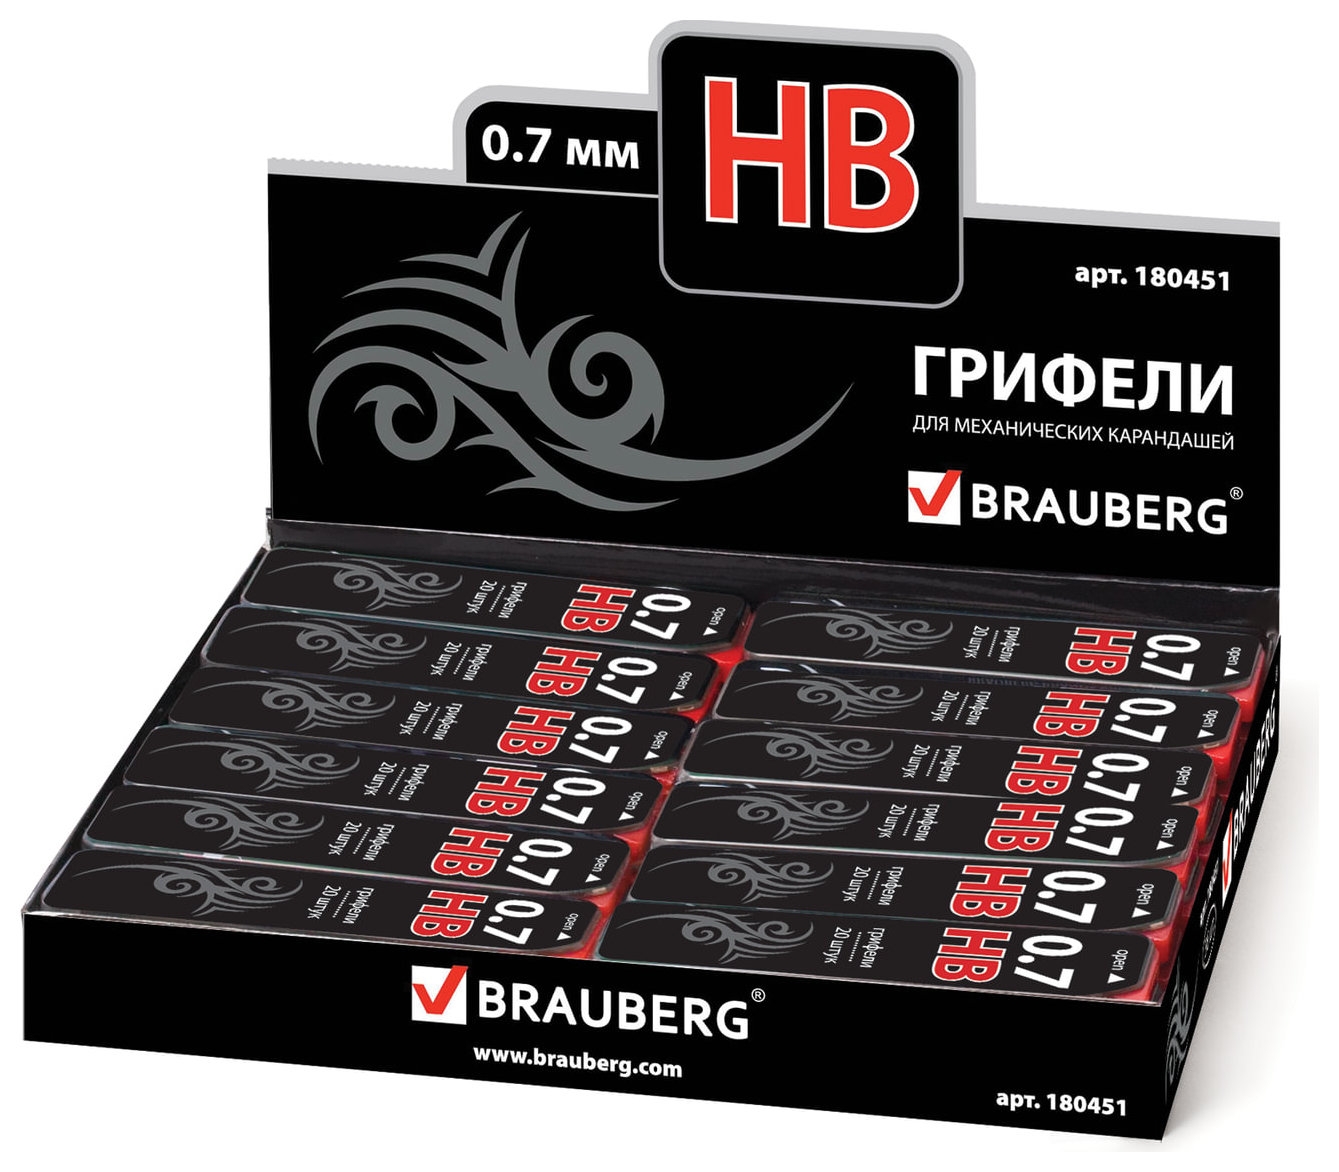 Грифели запасные Brauberg, комплект 20 шт., Black Jack Hi-polymer, HB, 0,7 мм